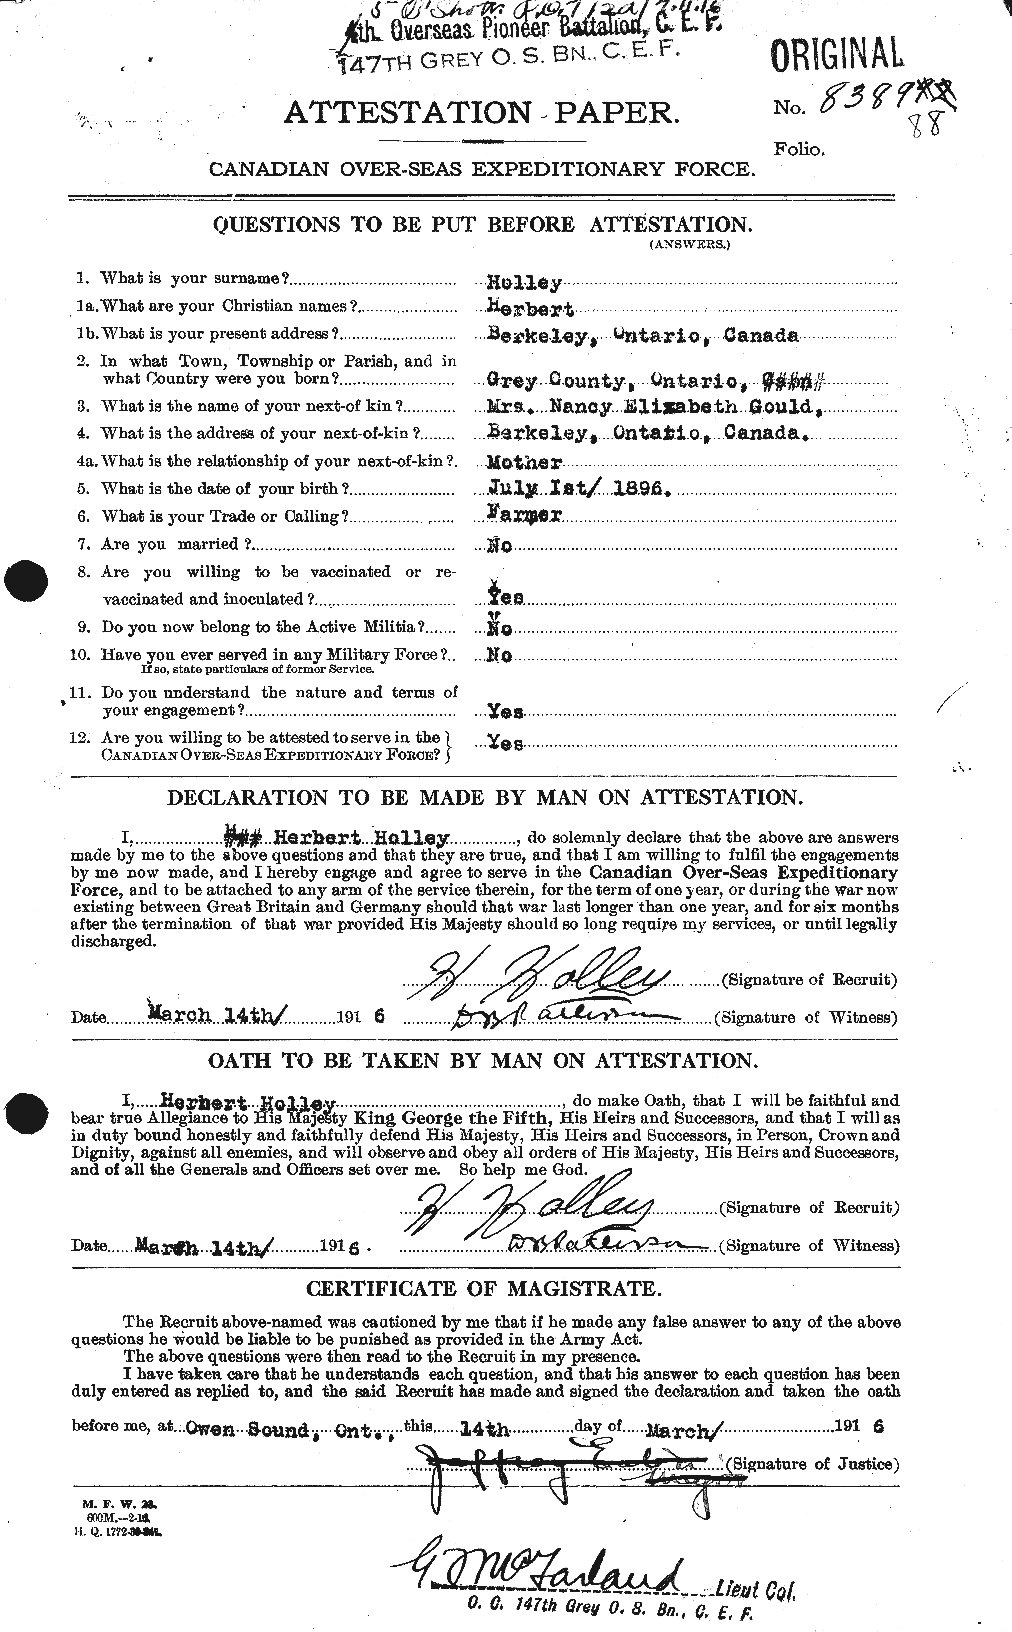 Dossiers du Personnel de la Première Guerre mondiale - CEC 396335a